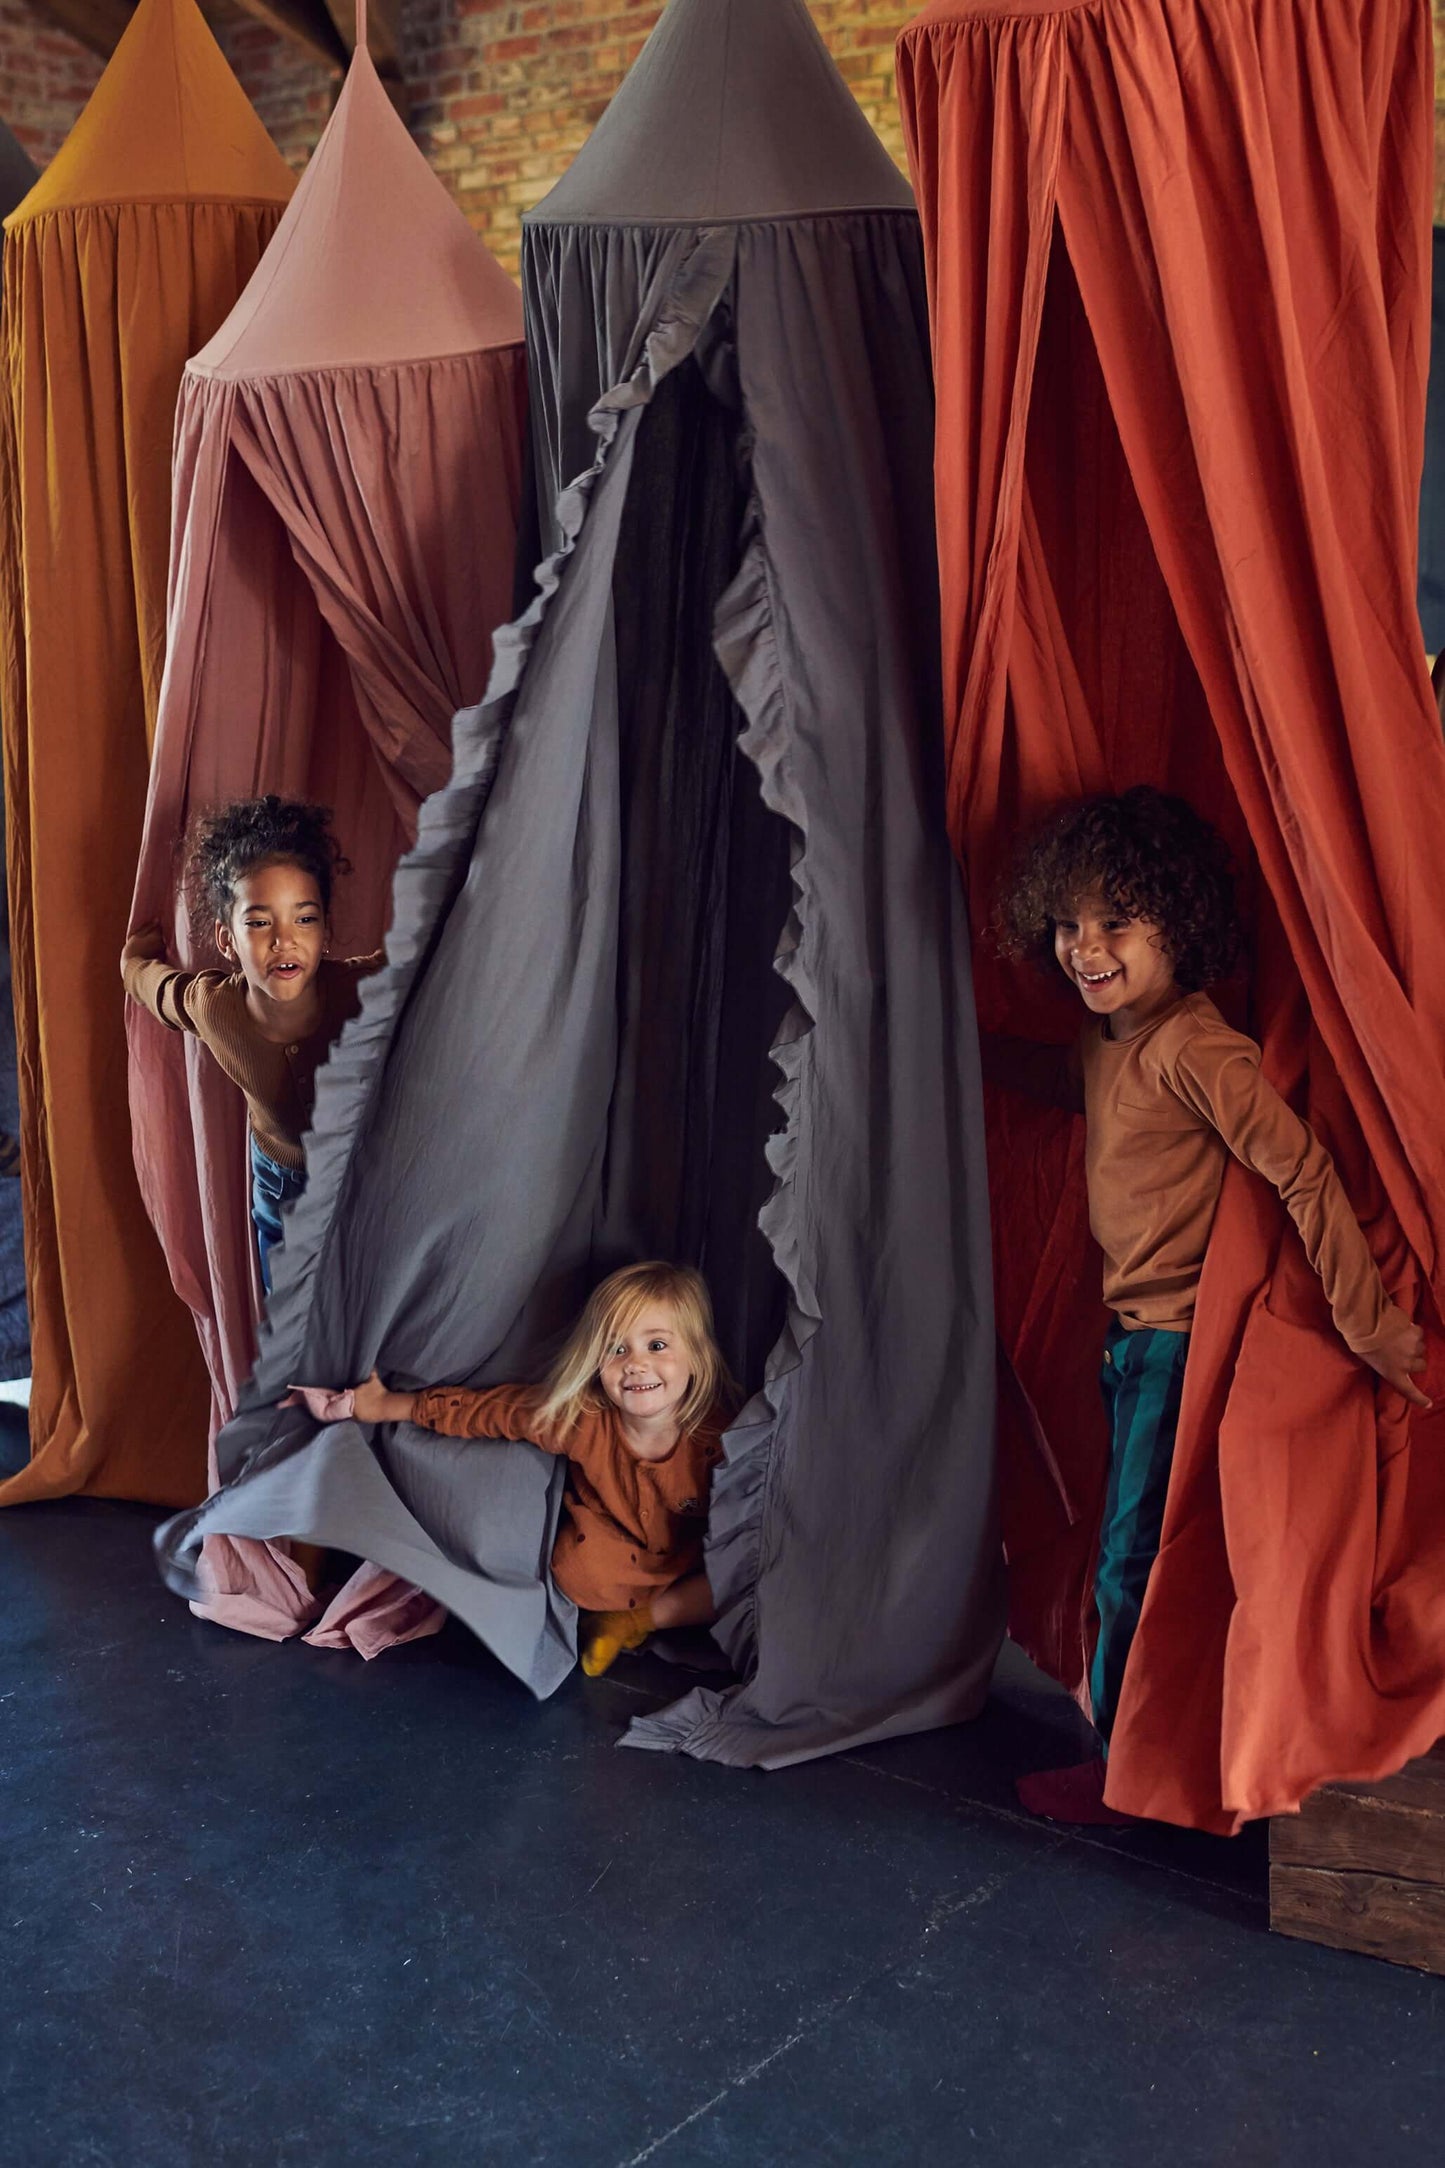 Dzieci się bawią w chowanego w baldachach w trzech róznych kolorach.